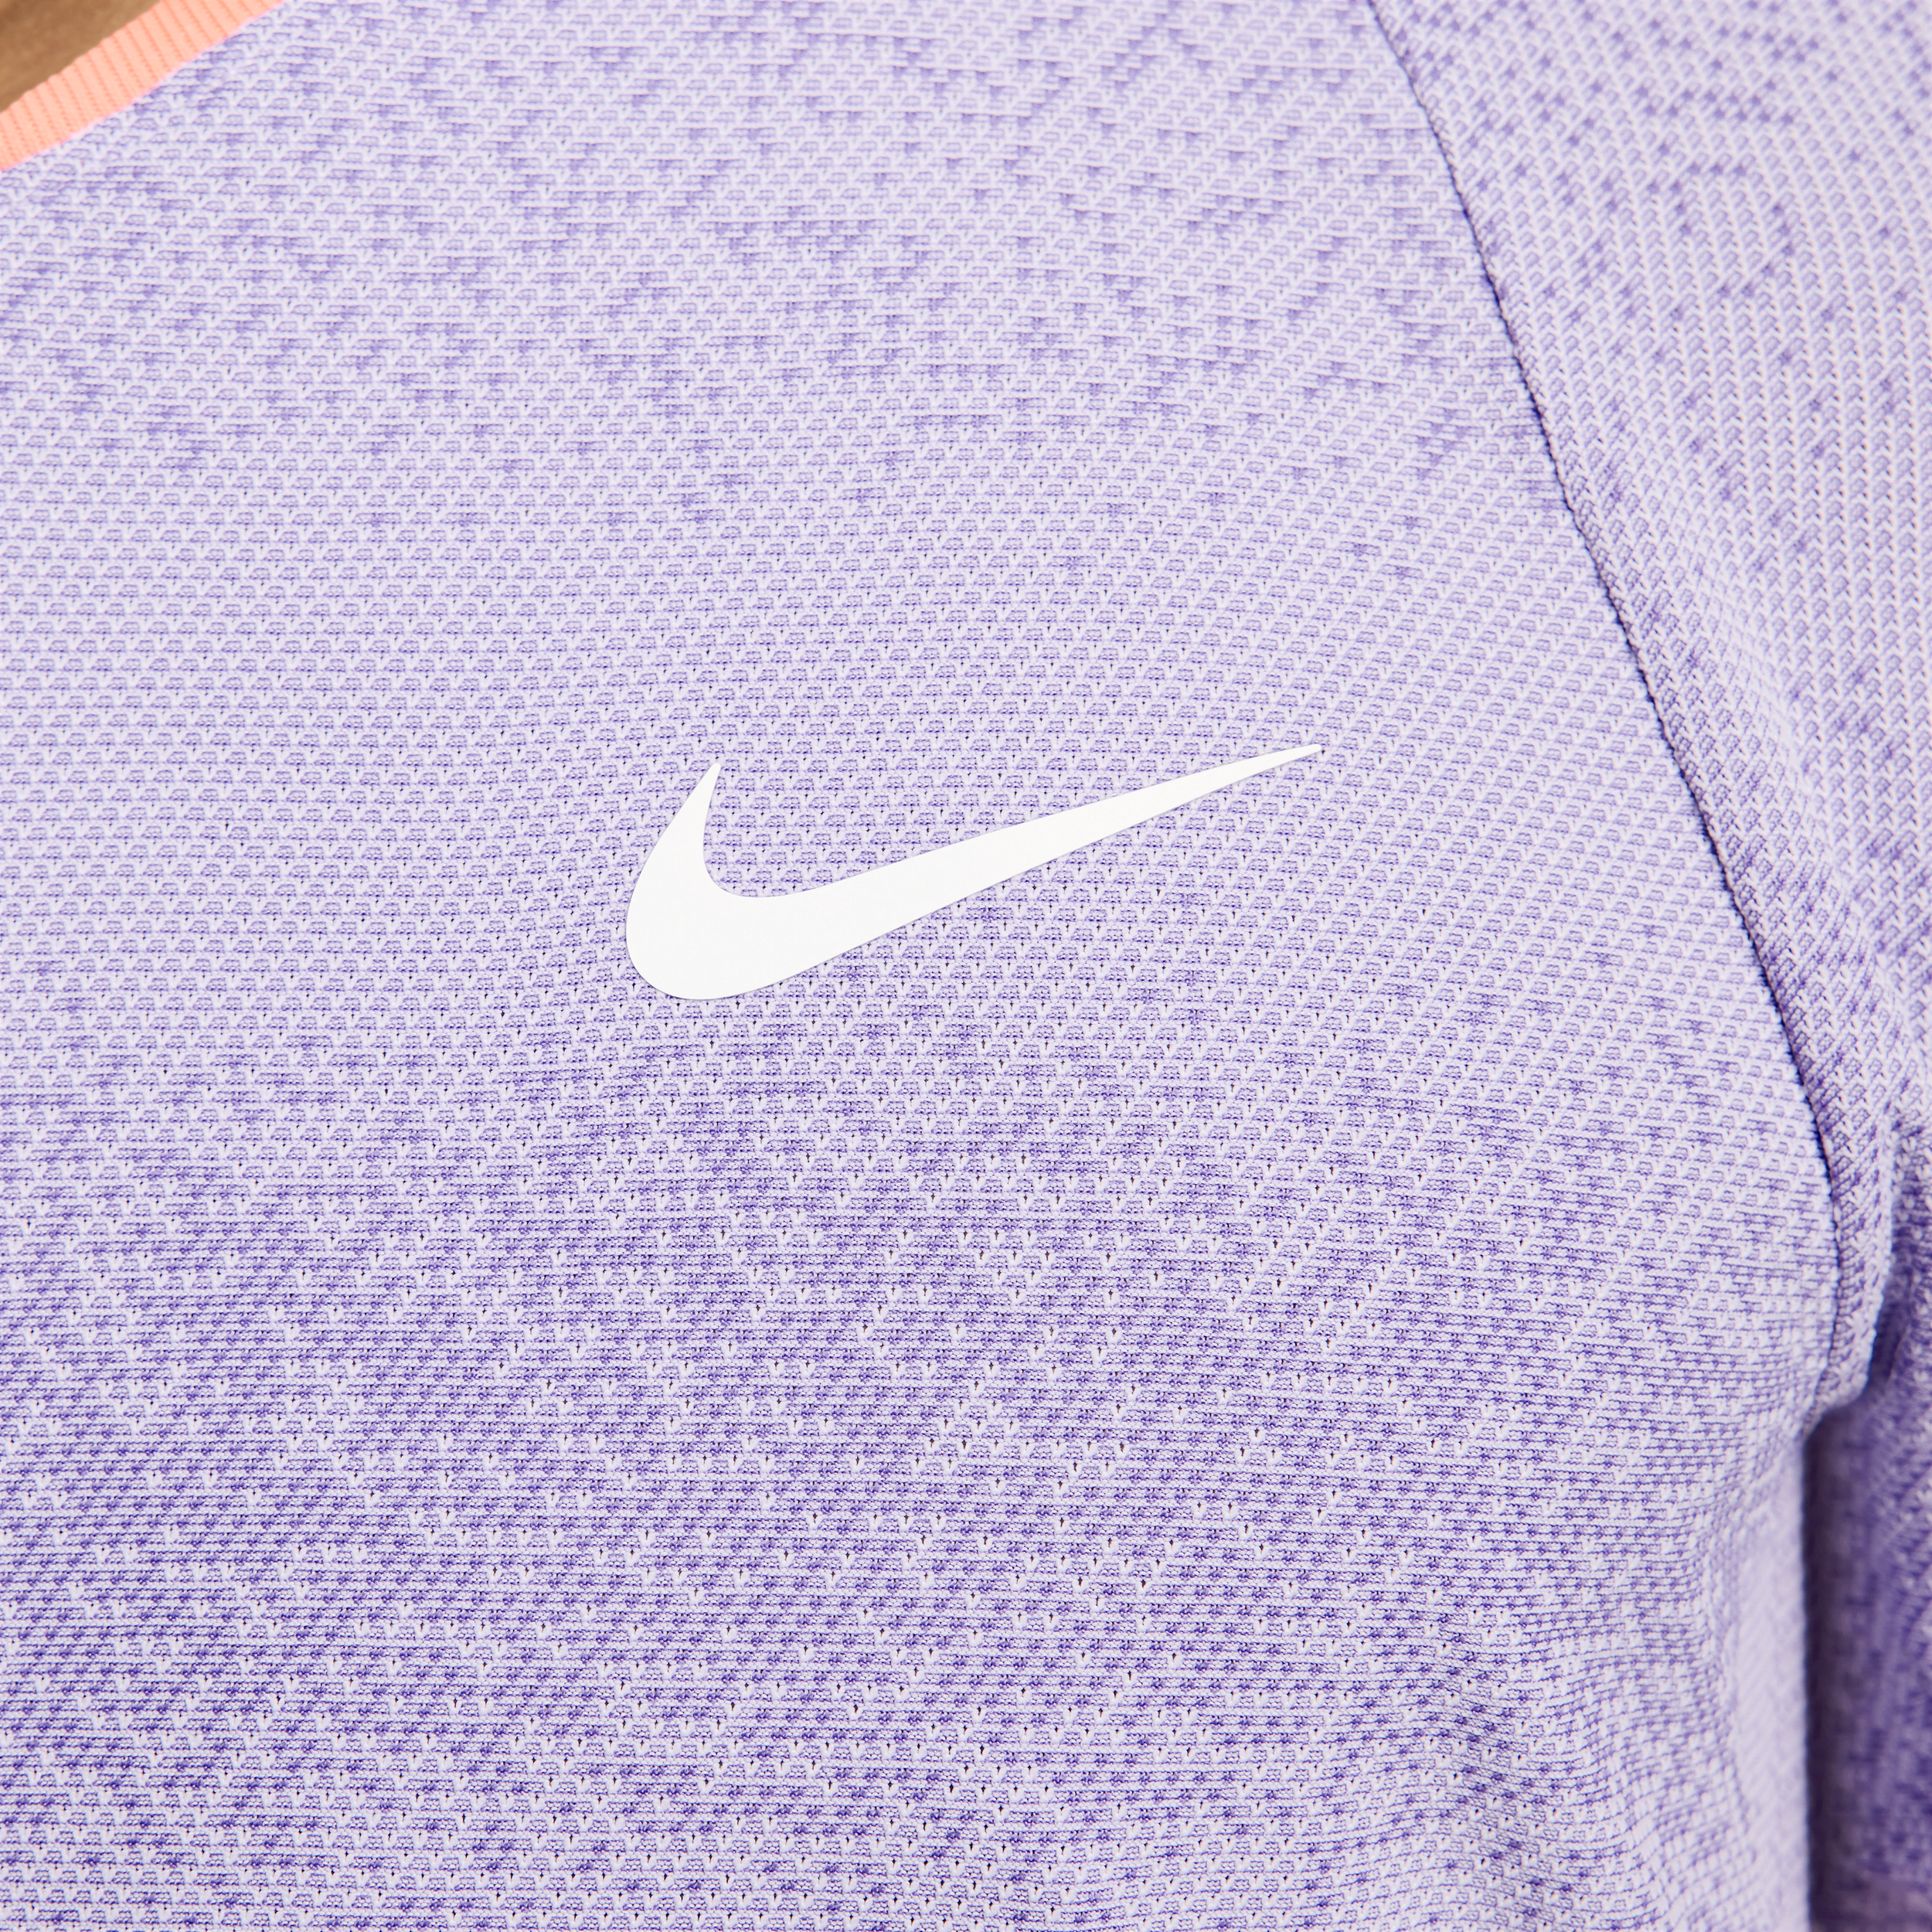 Nike Rafa Dri-FIT ADV tennistop met korte mouwen voor heren Paars